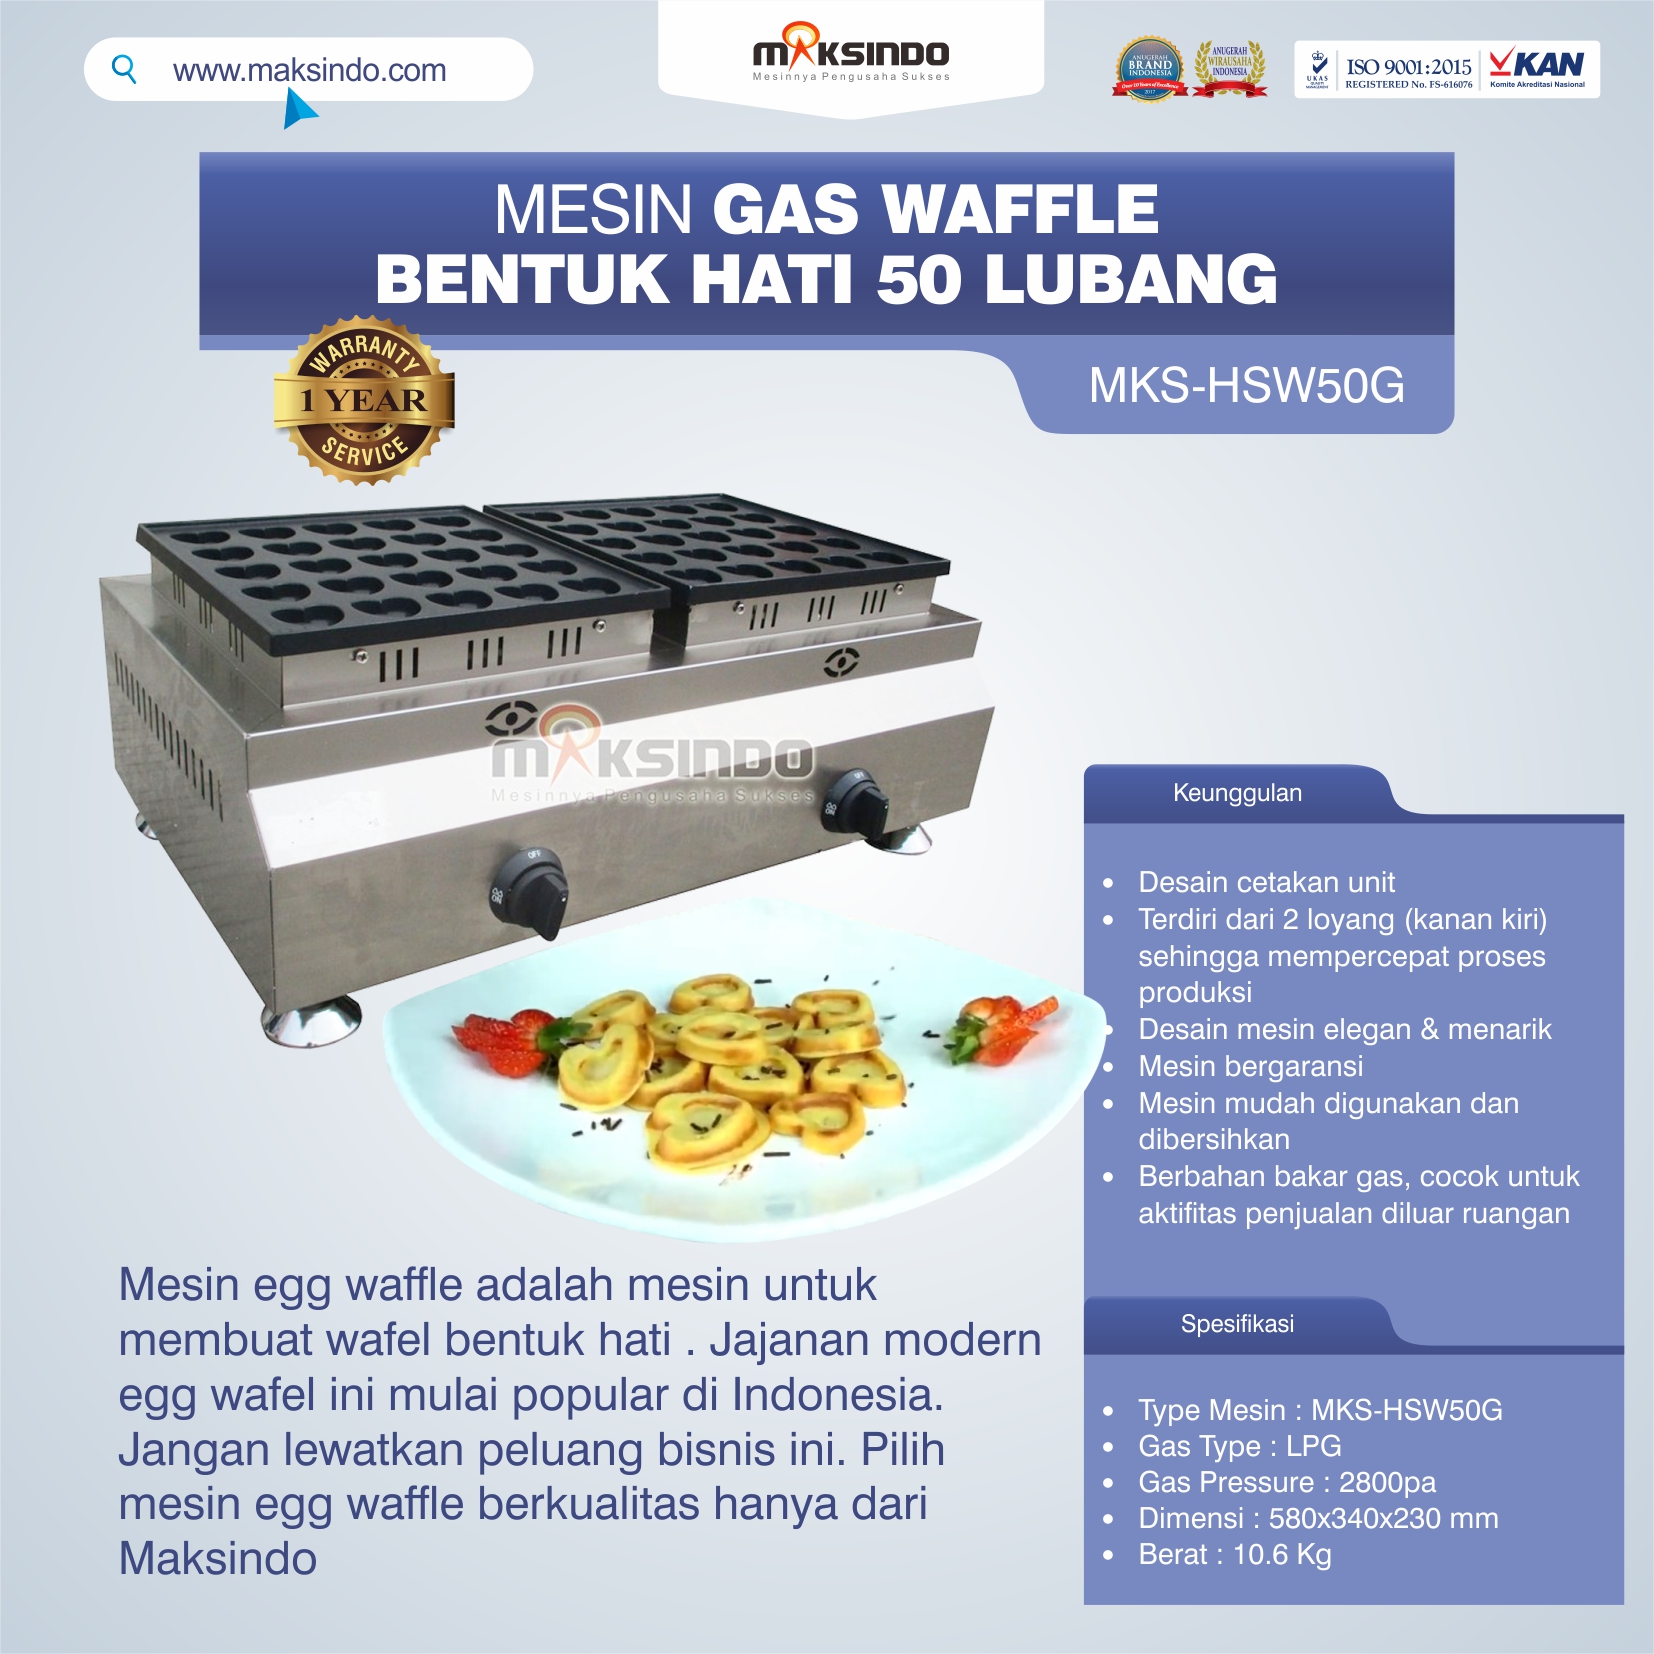 Jual Mesin Waffle Gas Bentuk Hati 50 Lubang MKS-HSW50G di Tangerang